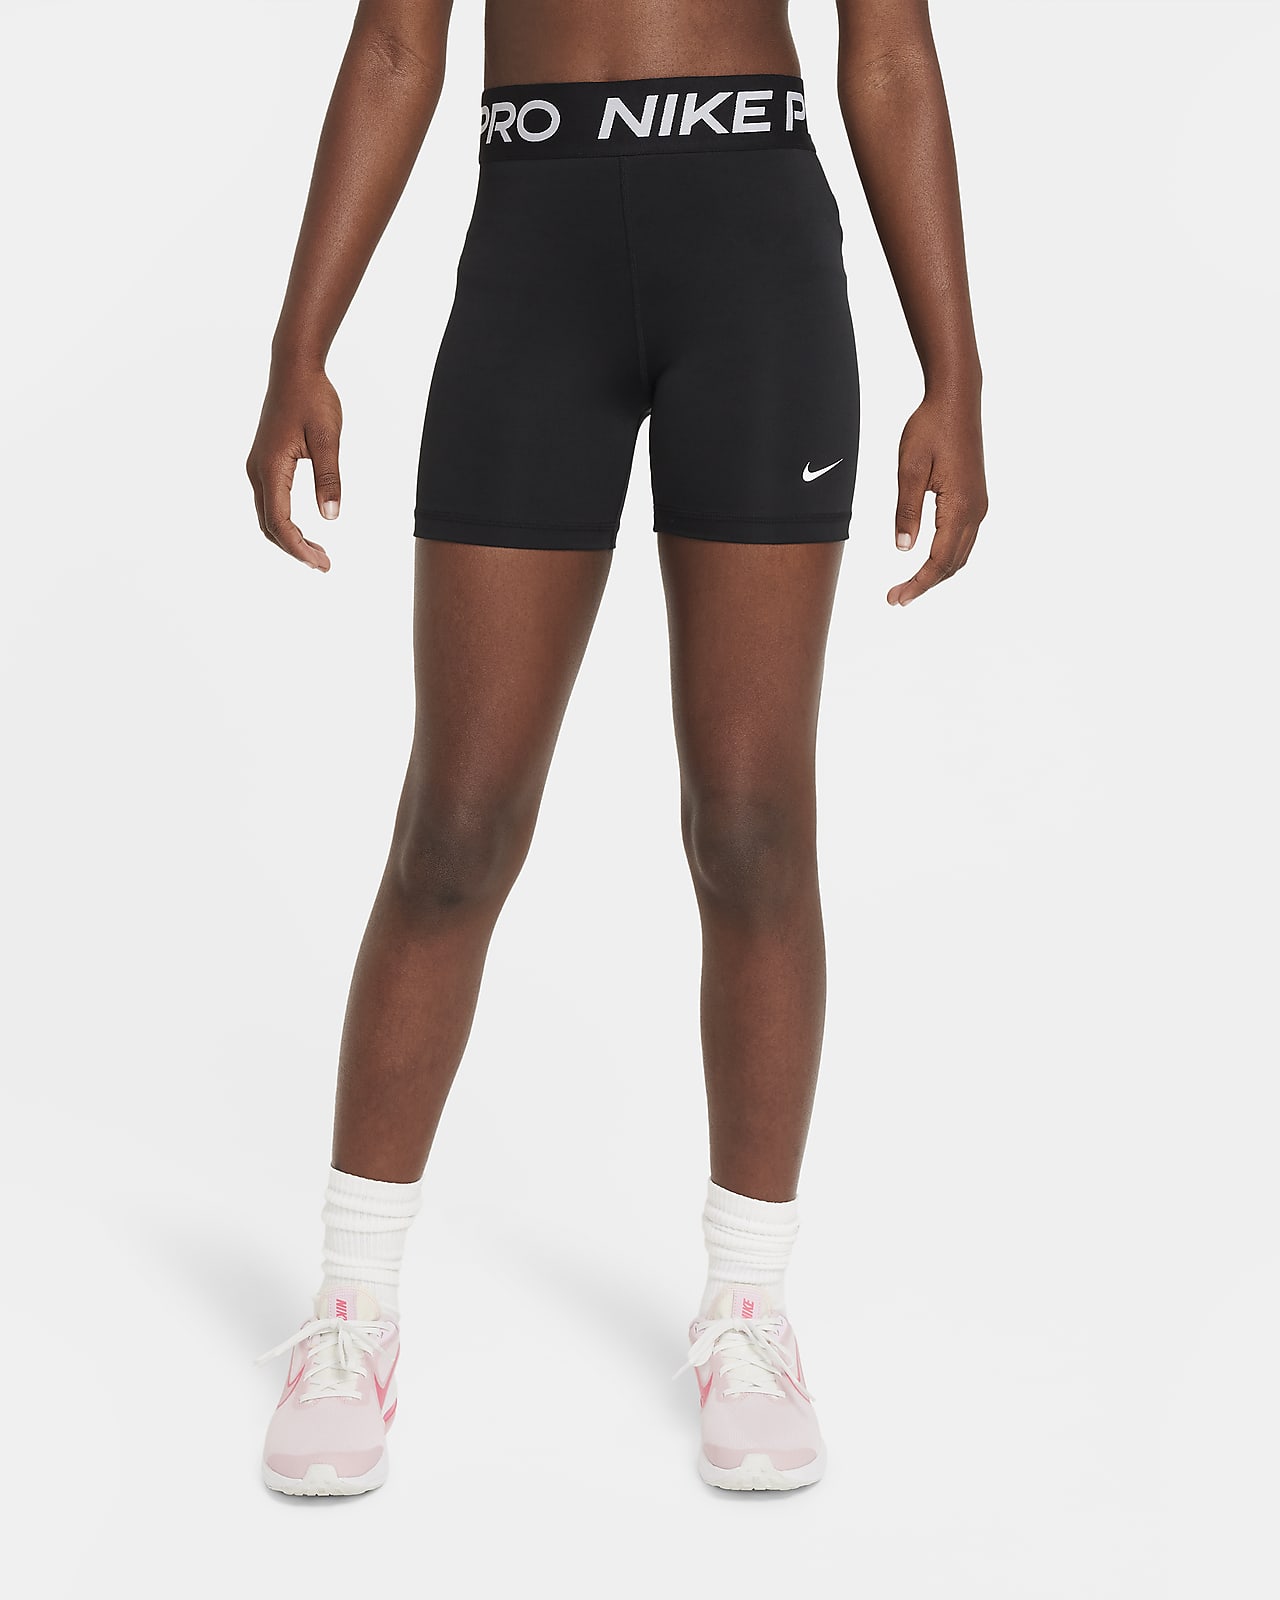 Melodramático erótico Gruñido Nike Pro Pantalón corto de 8 cm - Niña. Nike ES